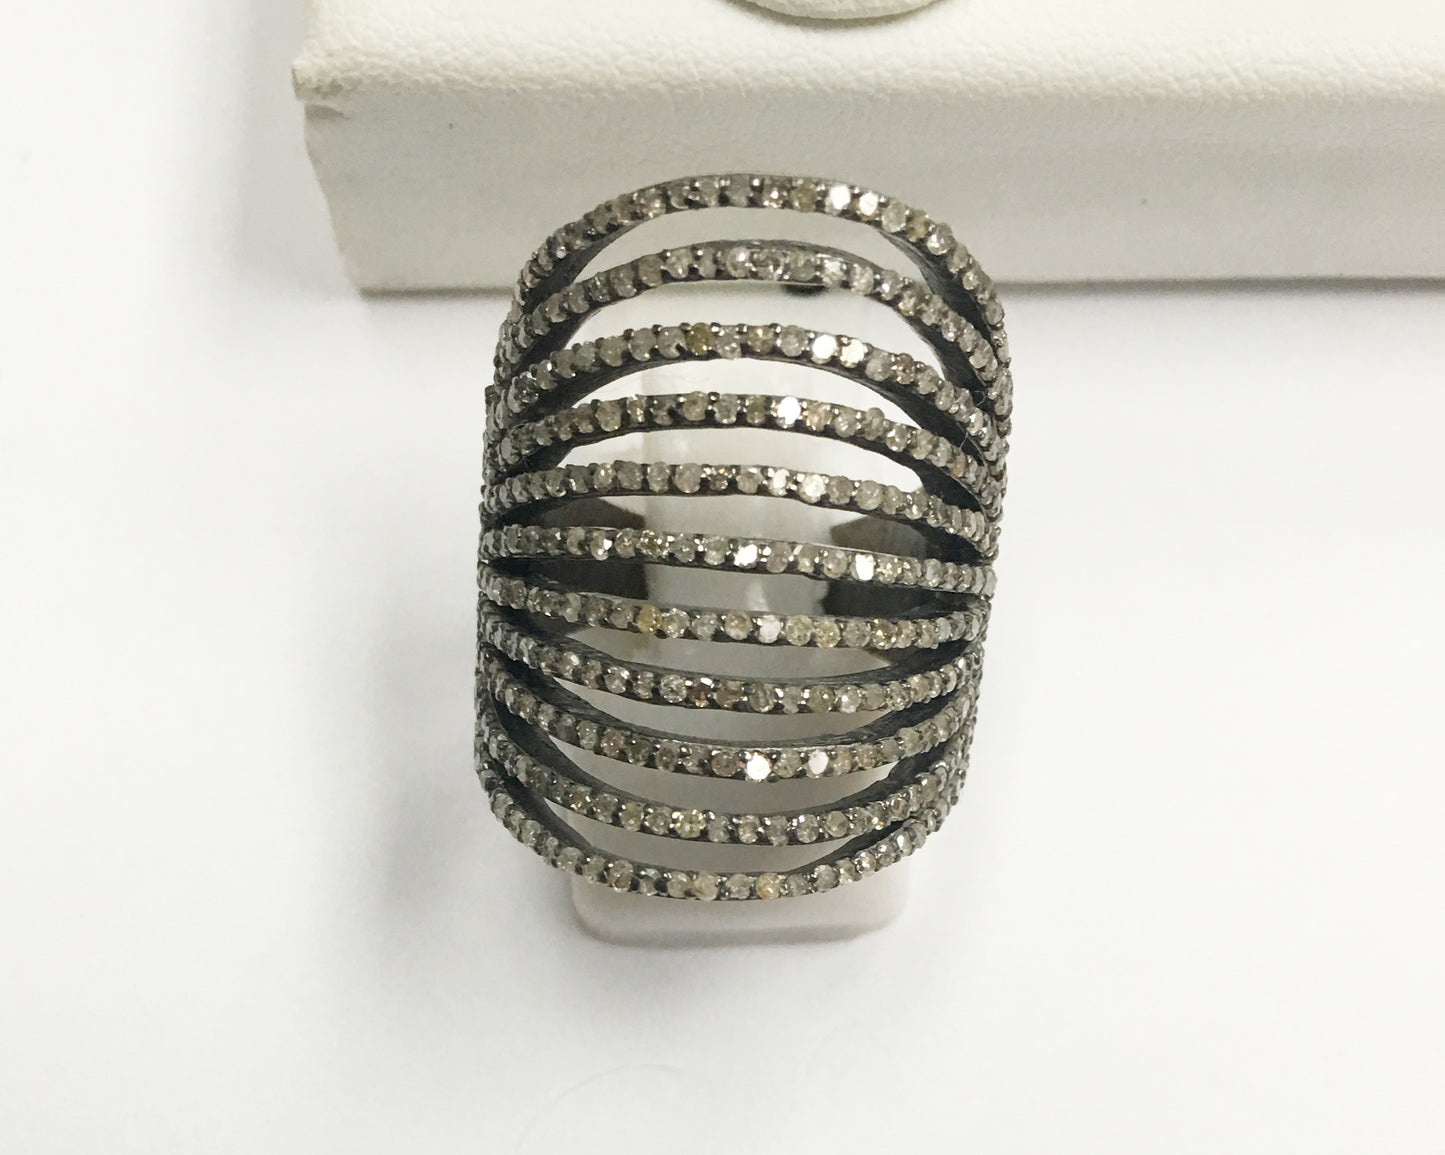 Multi Layred Diamond Ring,Pave Diamond Ring,Diamond Ring,Pave Ring, Statement Ring, Oxidized Silver